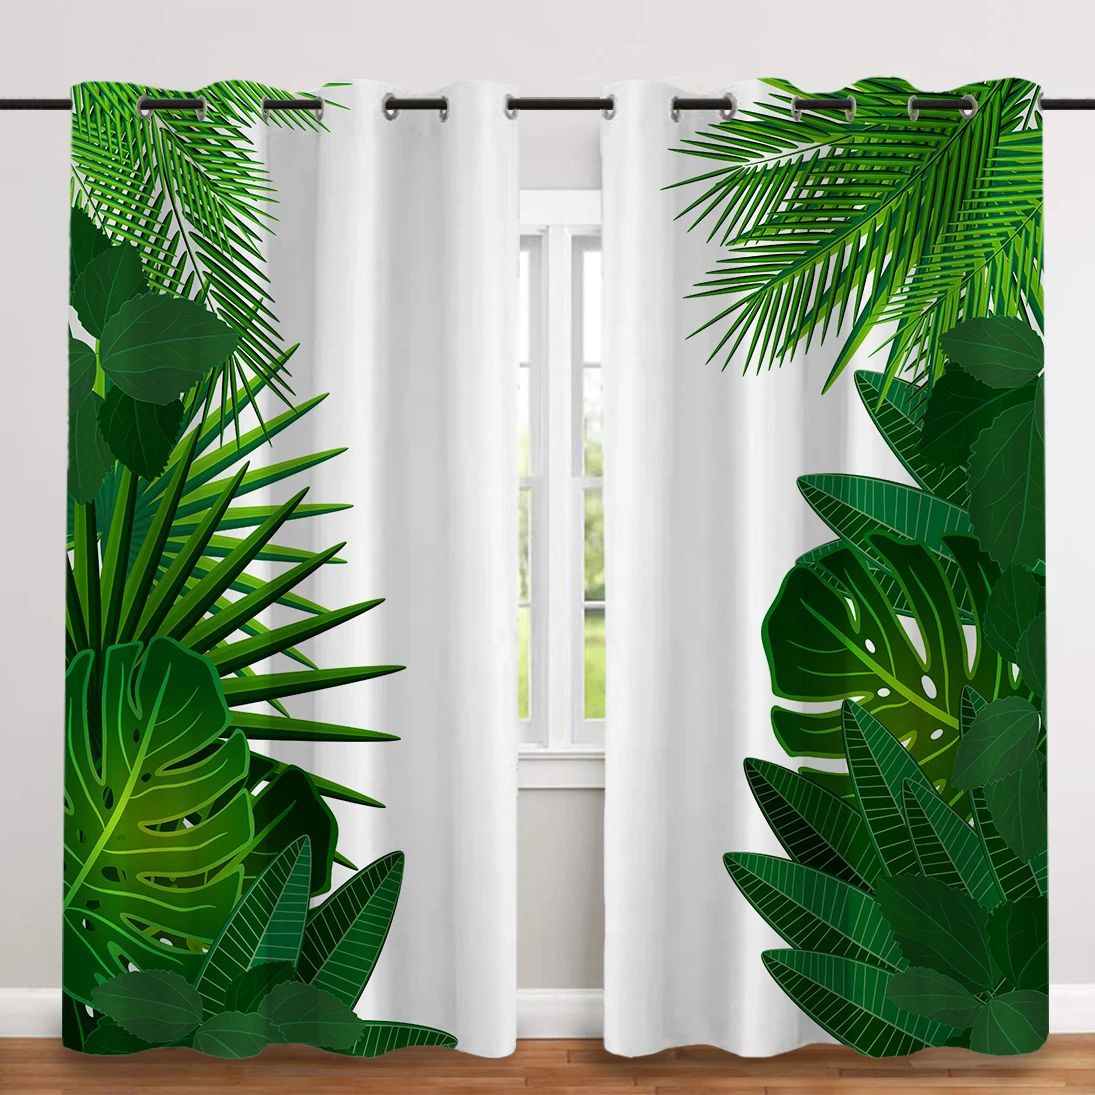 

Плотные тканевые занавески с тропическими листьями, шторы в скандинавском стиле для окон, светонепроницаемые шторы для спальни и гостиной, ...